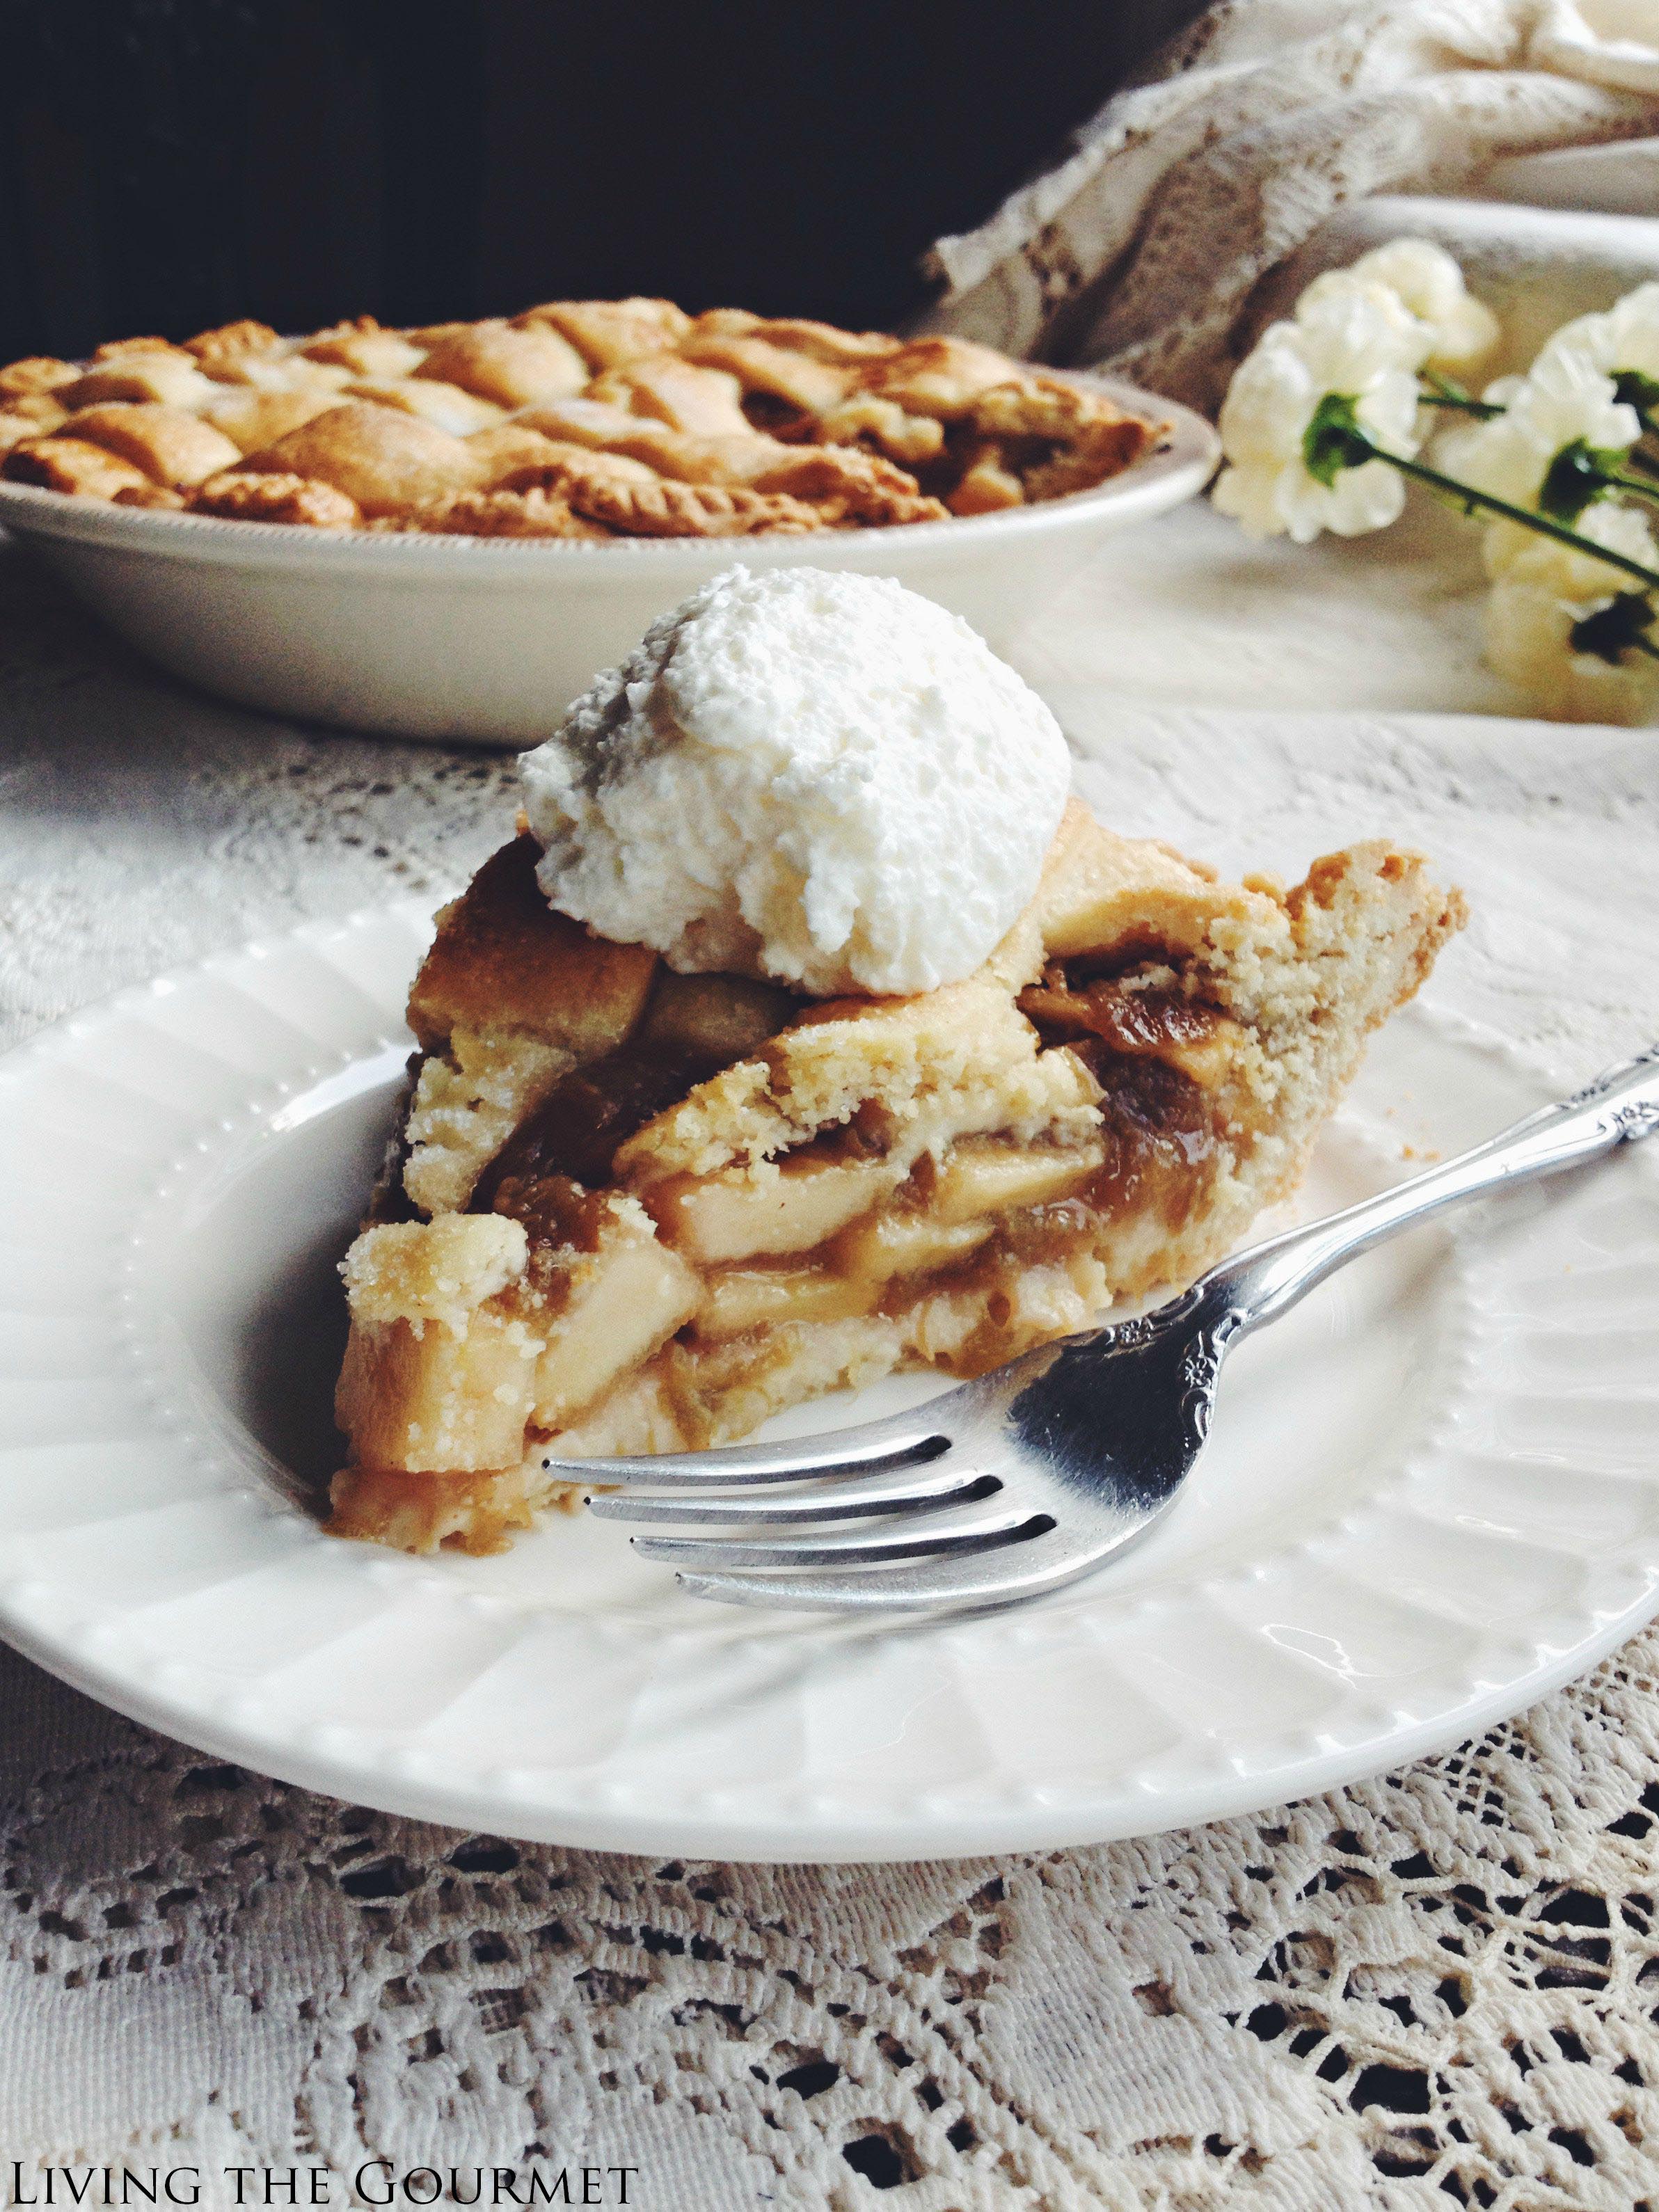 Living the Gourmet: Apple Rhubarb Pie